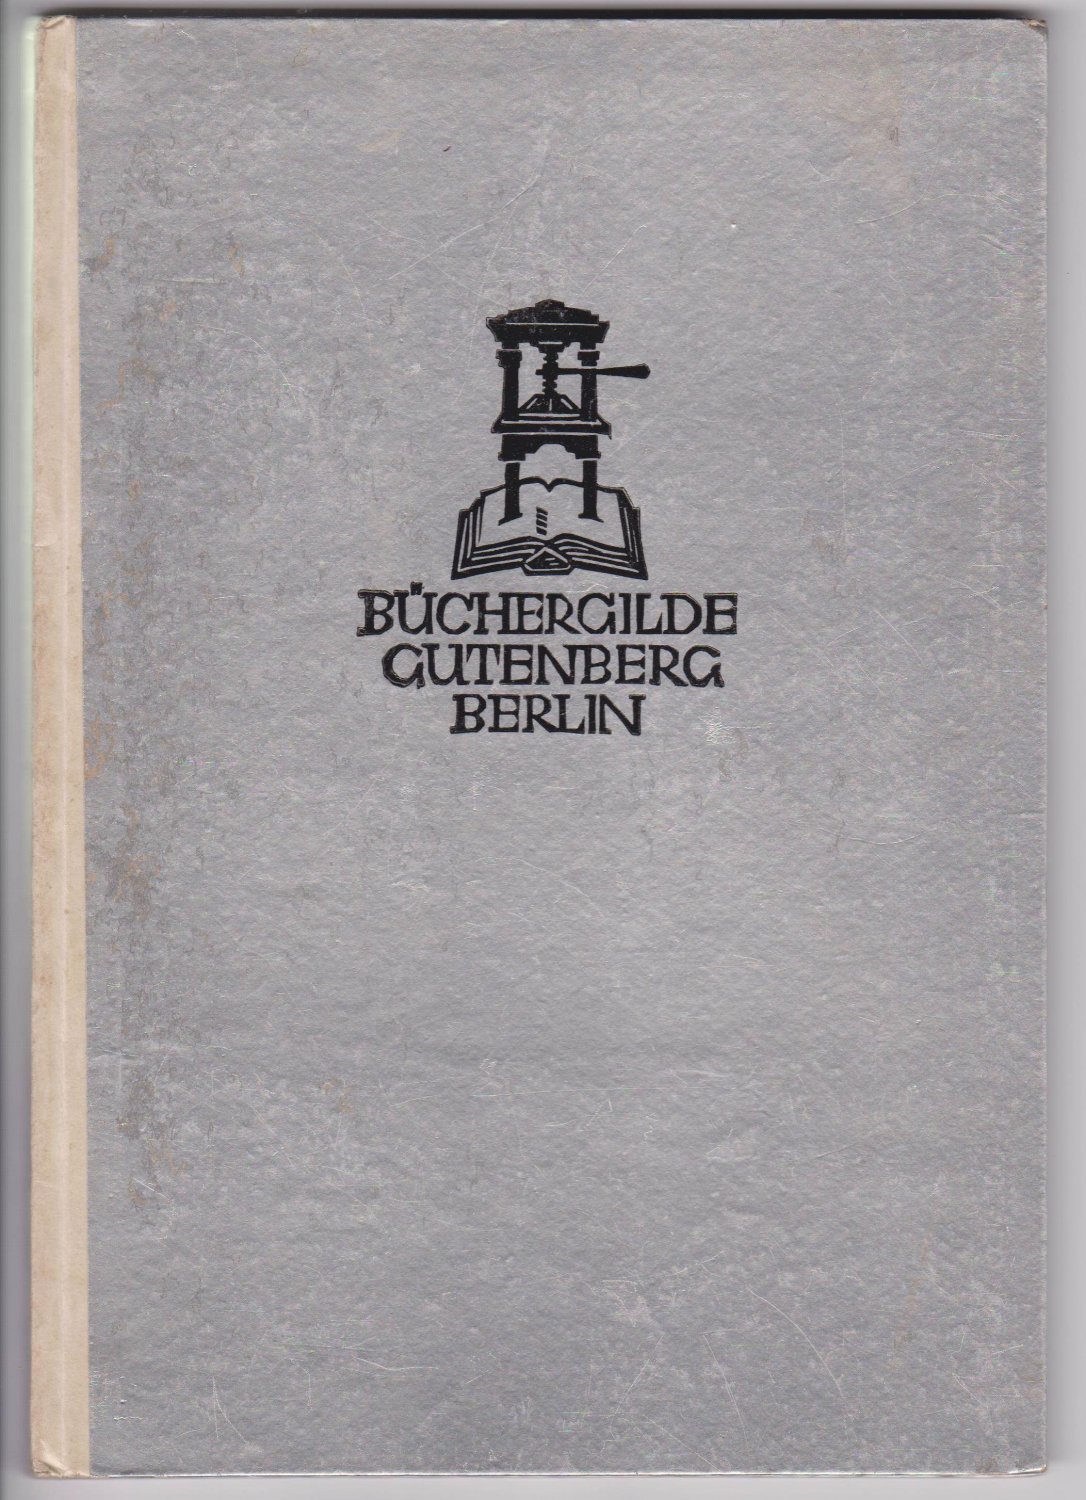 BÜCHERGILDE GUTENBERG:  Du - unser Verband! Den Teilnehmern am 12. Verbandstag des Verbandes der Kupferschmiede Deutschlands vom 23. bis 27. Juni 1929 in Hannover gewidmet von der Büchergilde Gutenberg, Berlin. 